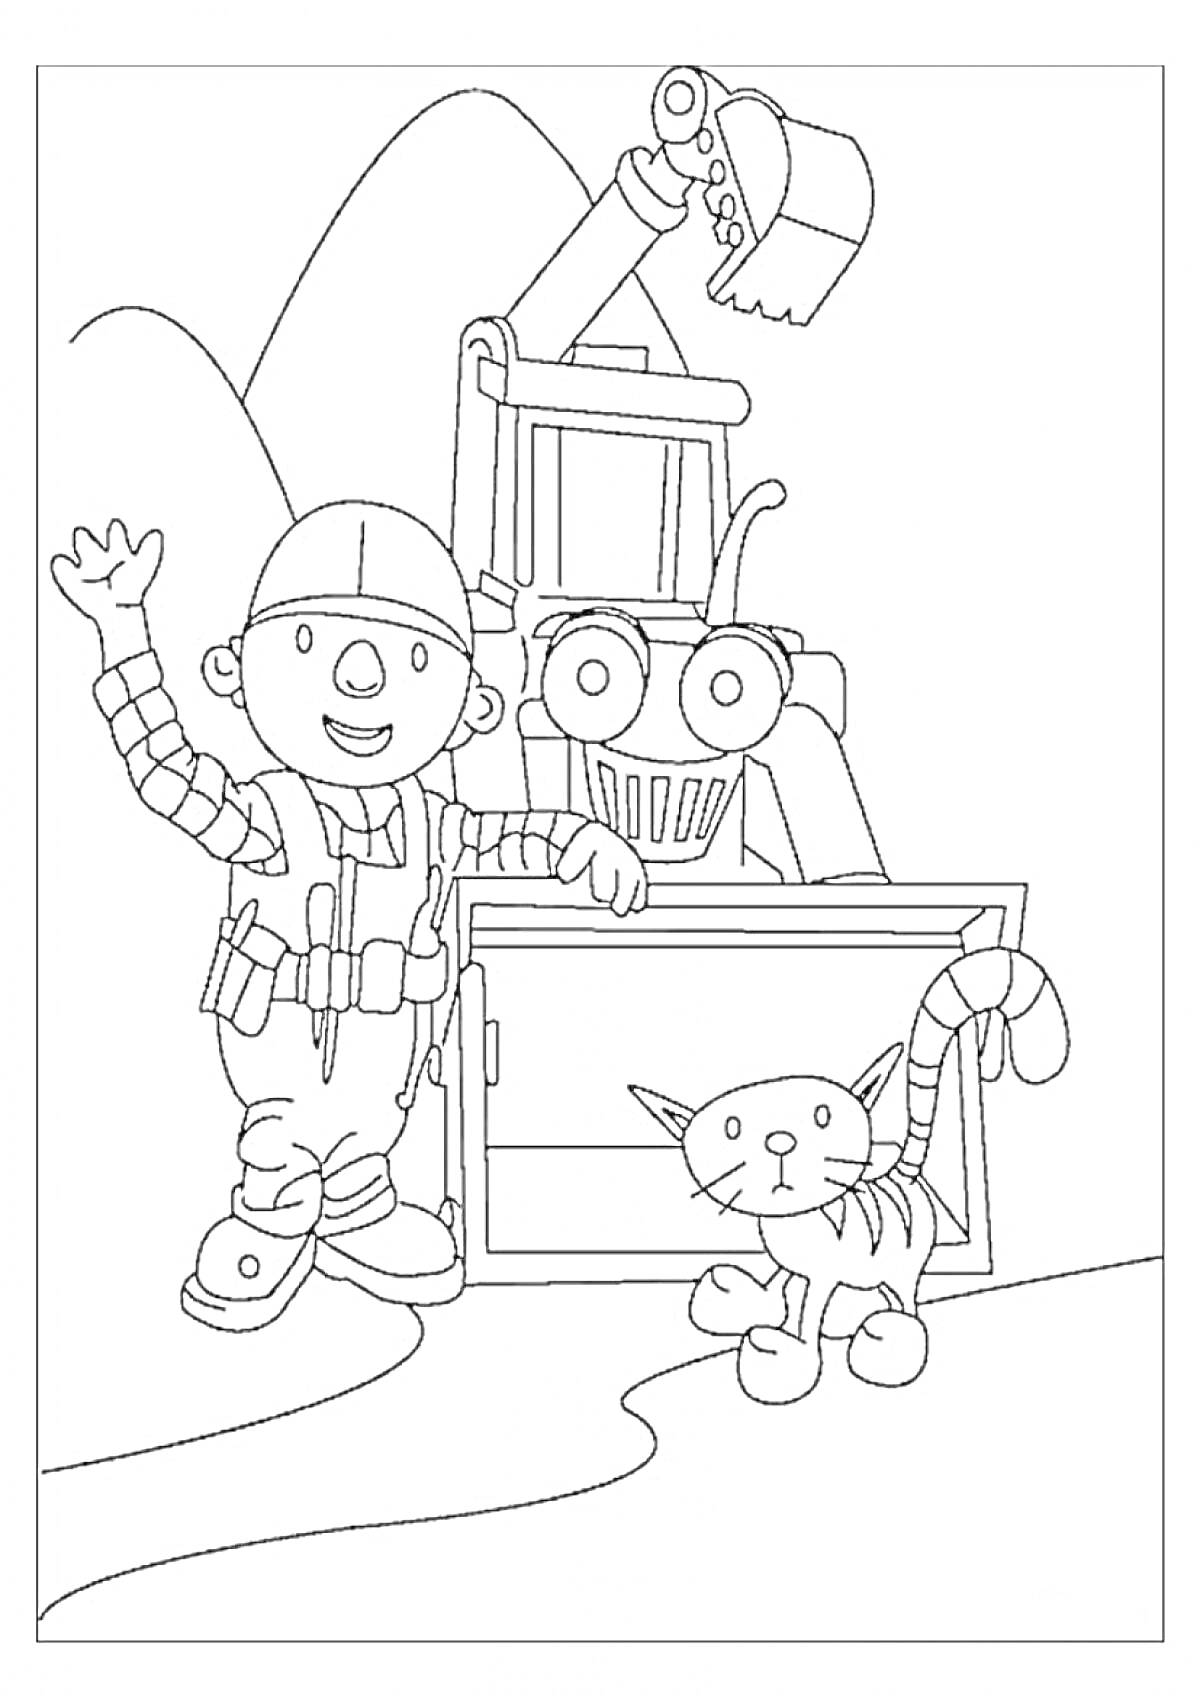 Боб строитель с экскаватором и котом на фоне гор